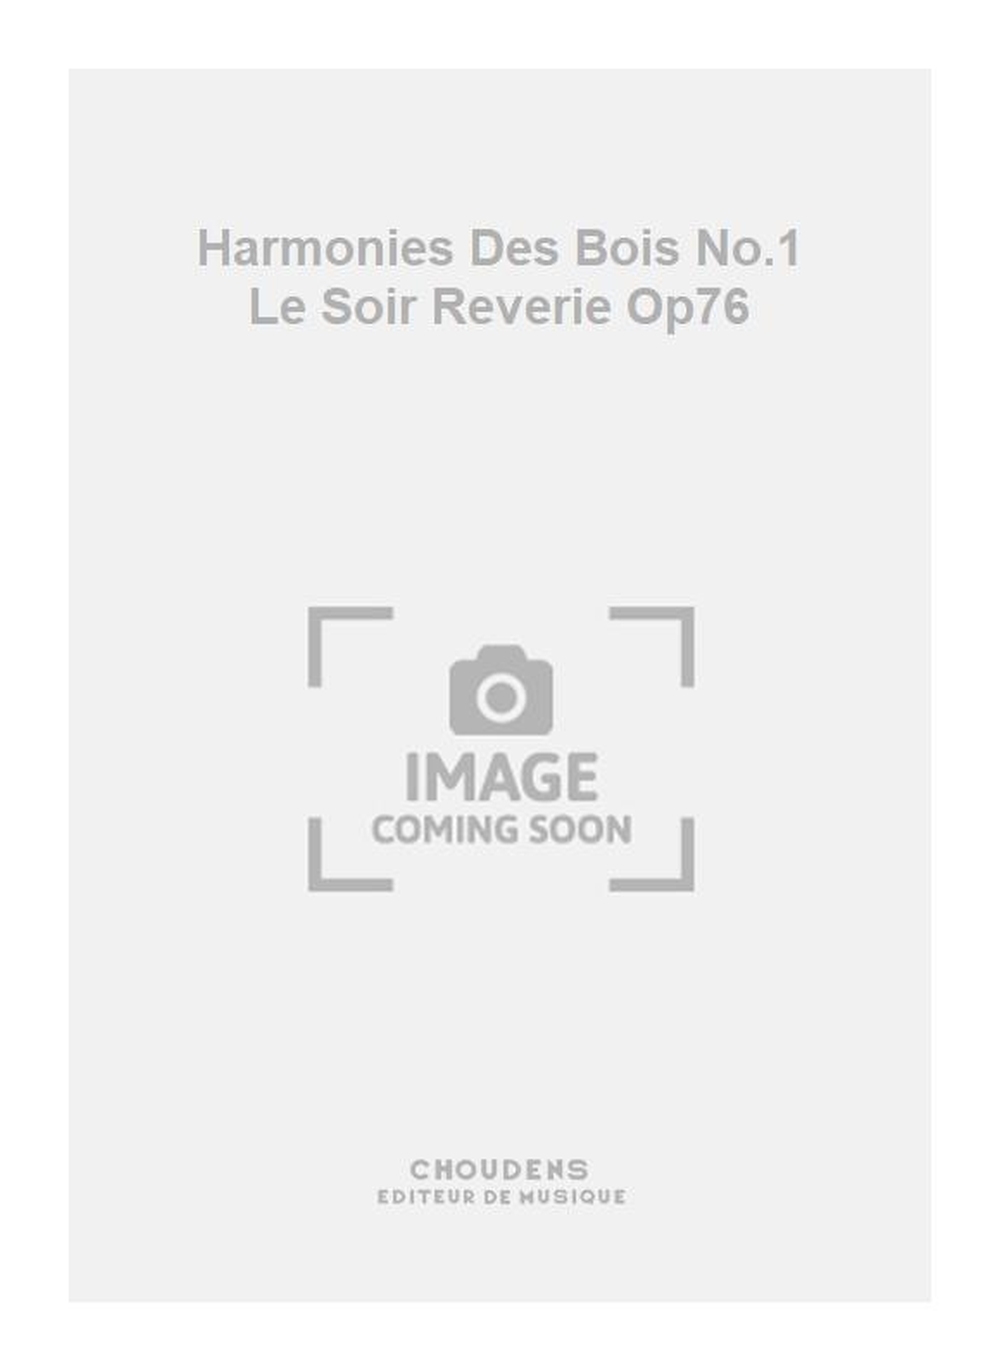 Jacques Offenbach: Harmonies Des Bois No.1 Le Soir Reverie Op76